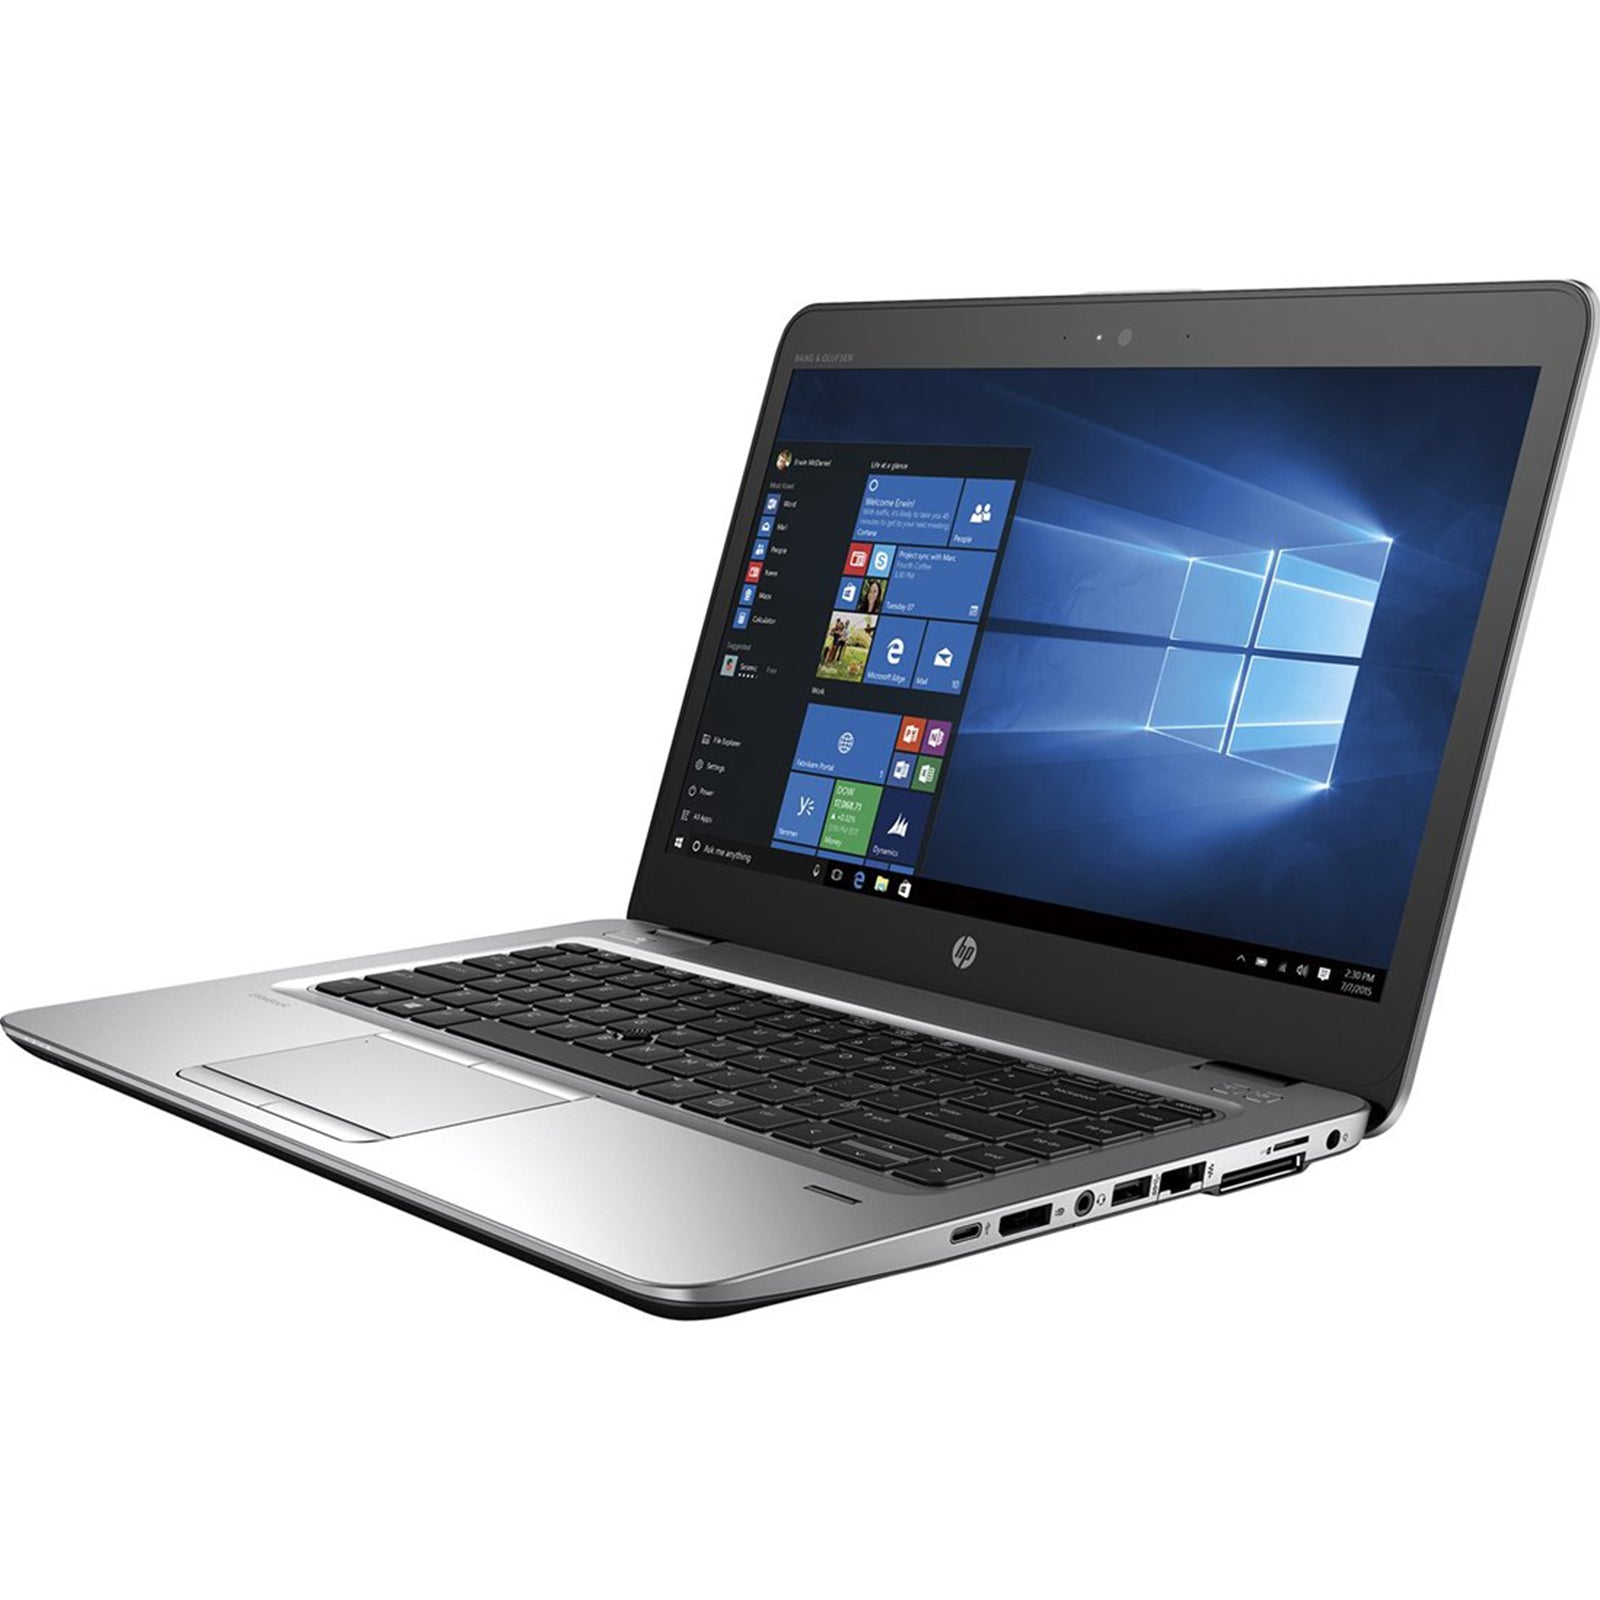 Notebook ricondizionato - Grado A - Notebook PC Portatile Ricondizionato HP EliteBook 840 G4 14" Core i5-7200U Ram 8GB SSD 240GB Webcam Freedos - Disponibile in 2-4 giorni lavorativi